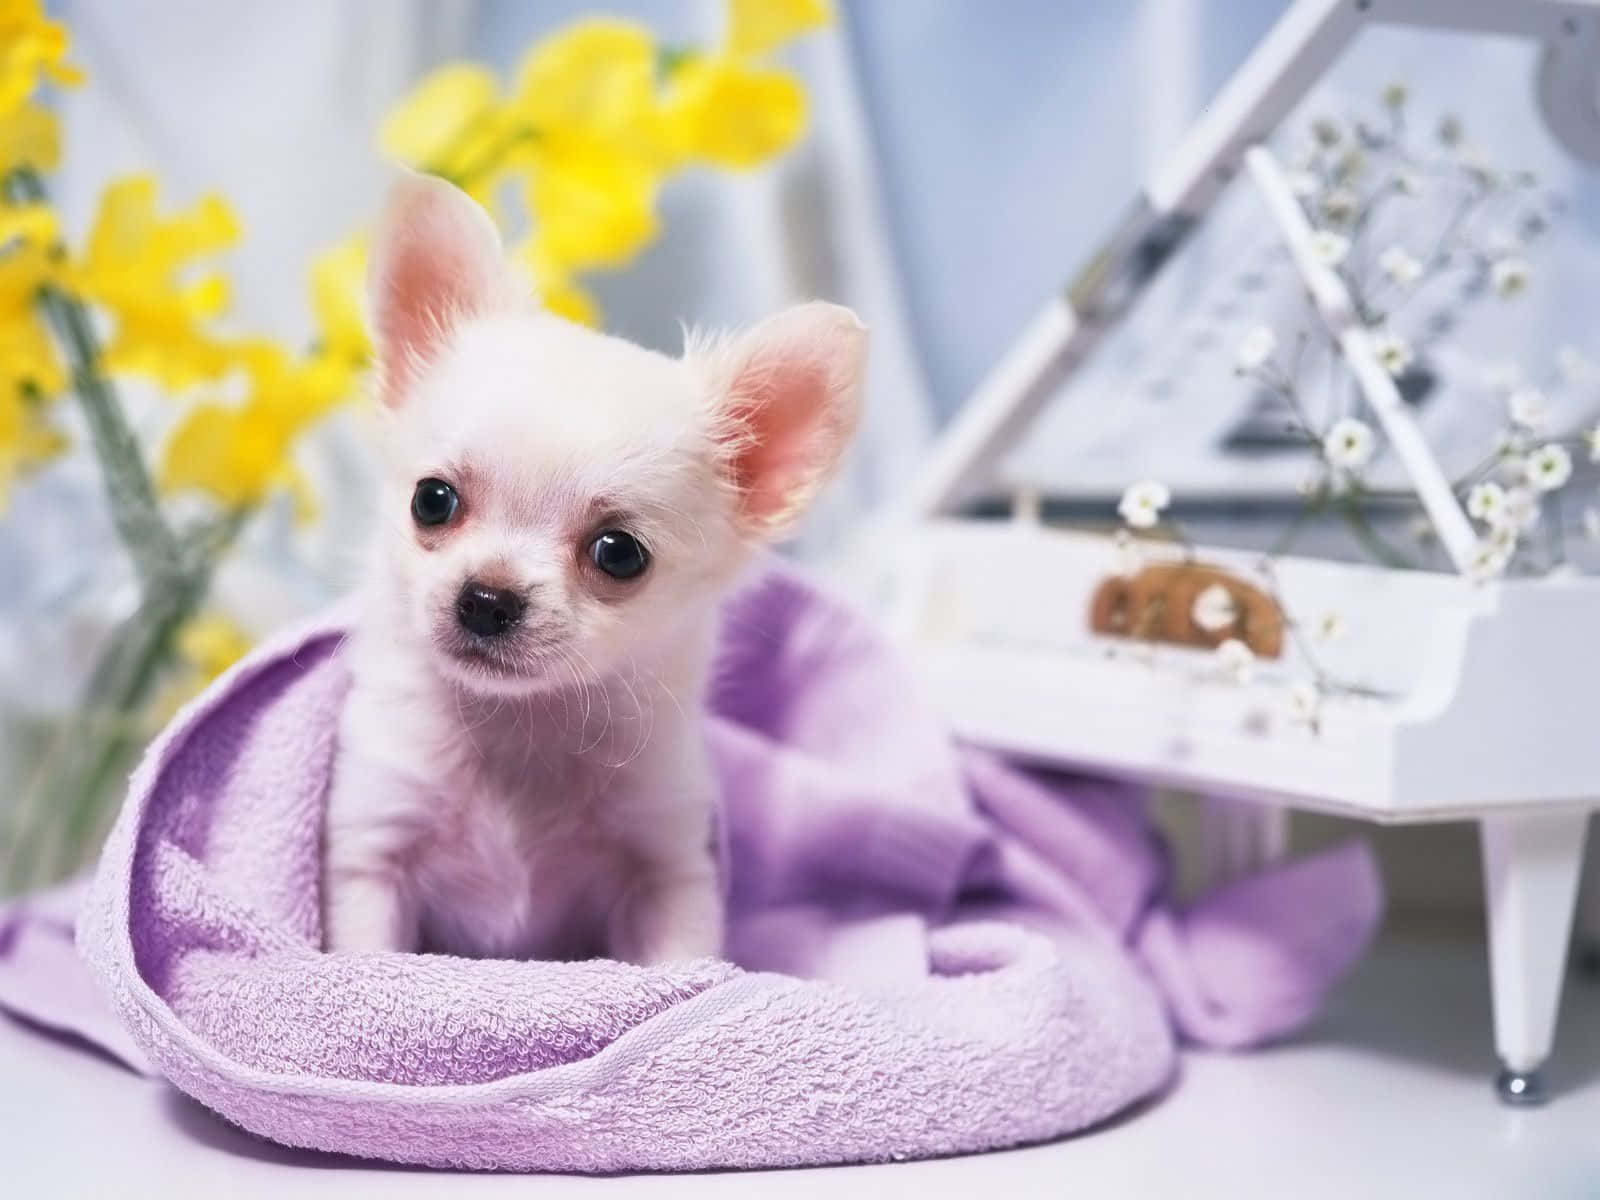 Questoadorabile Cane Chihuahua È Viziato Per Scelta.